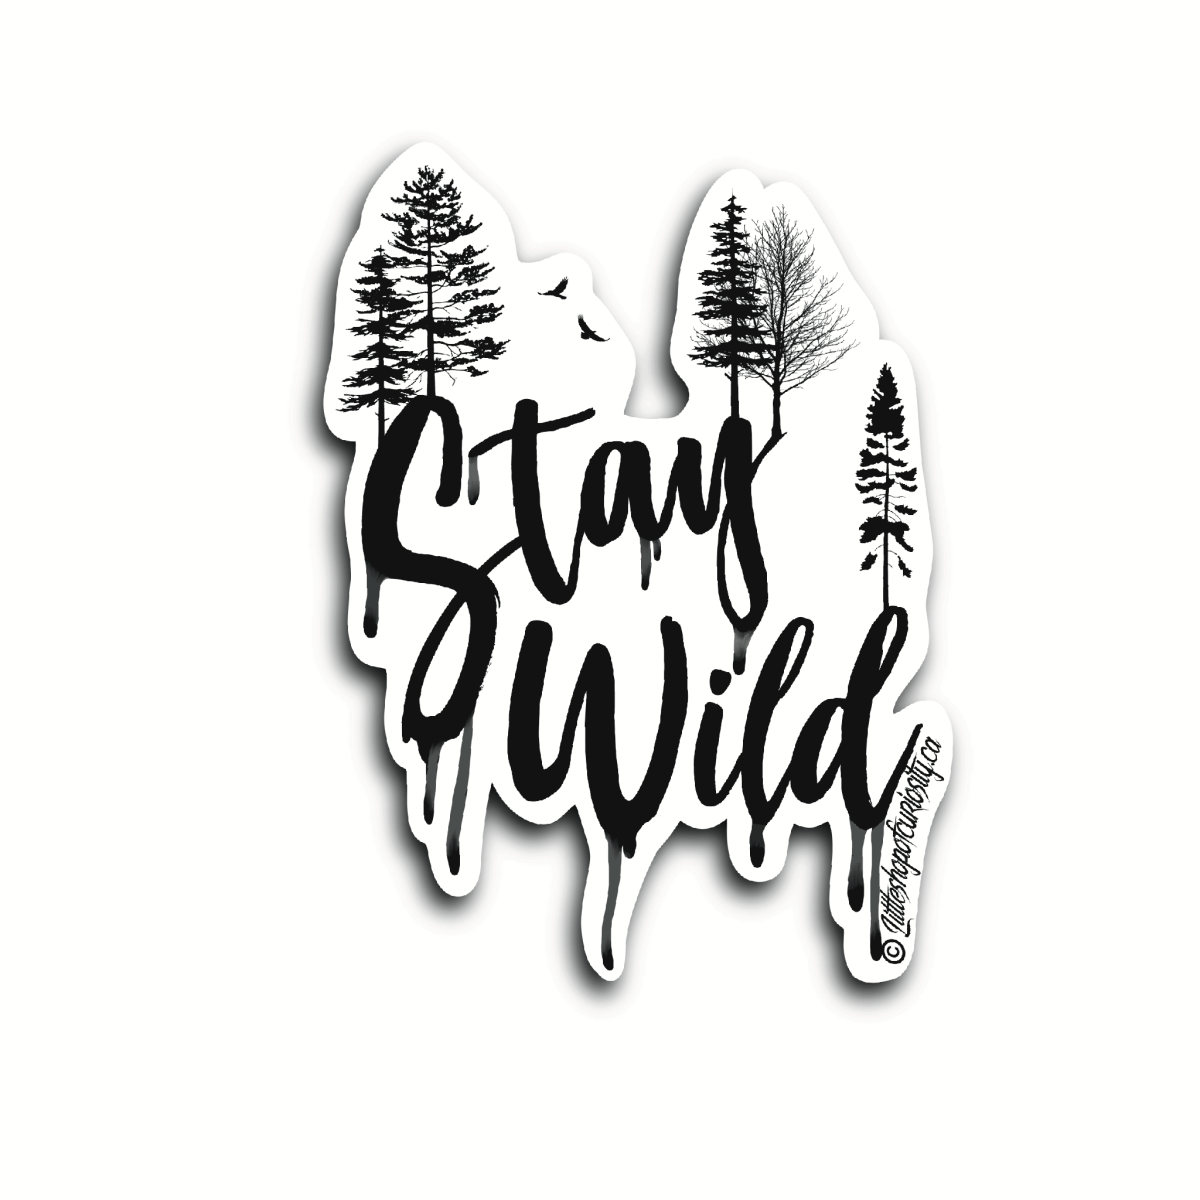 Stay Wild Sticker - Black & White Sticker - Little Shop of Curiosity